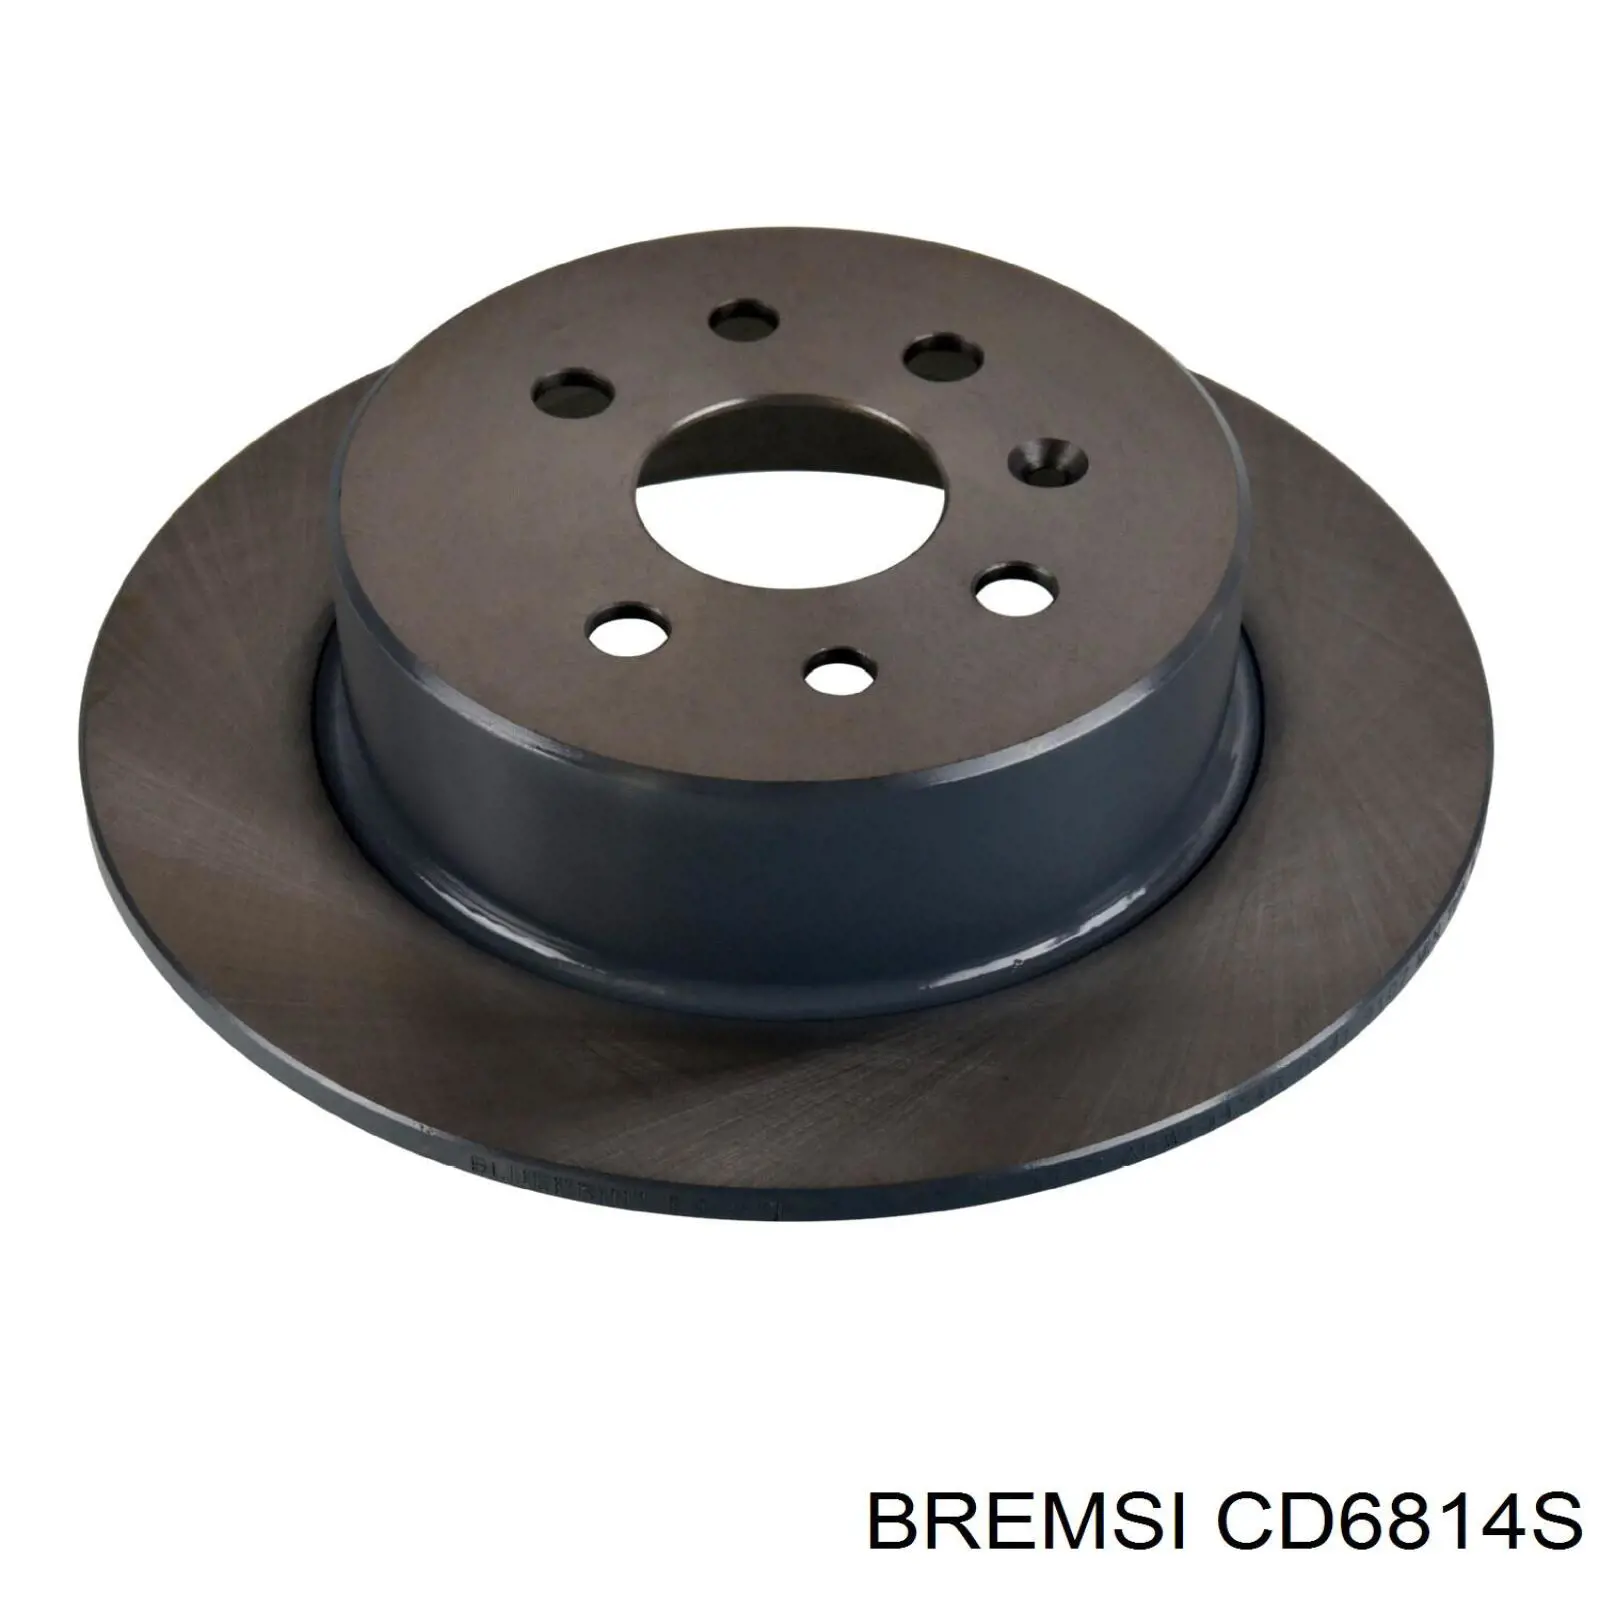 CD6814S Bremsi disco de freno trasero